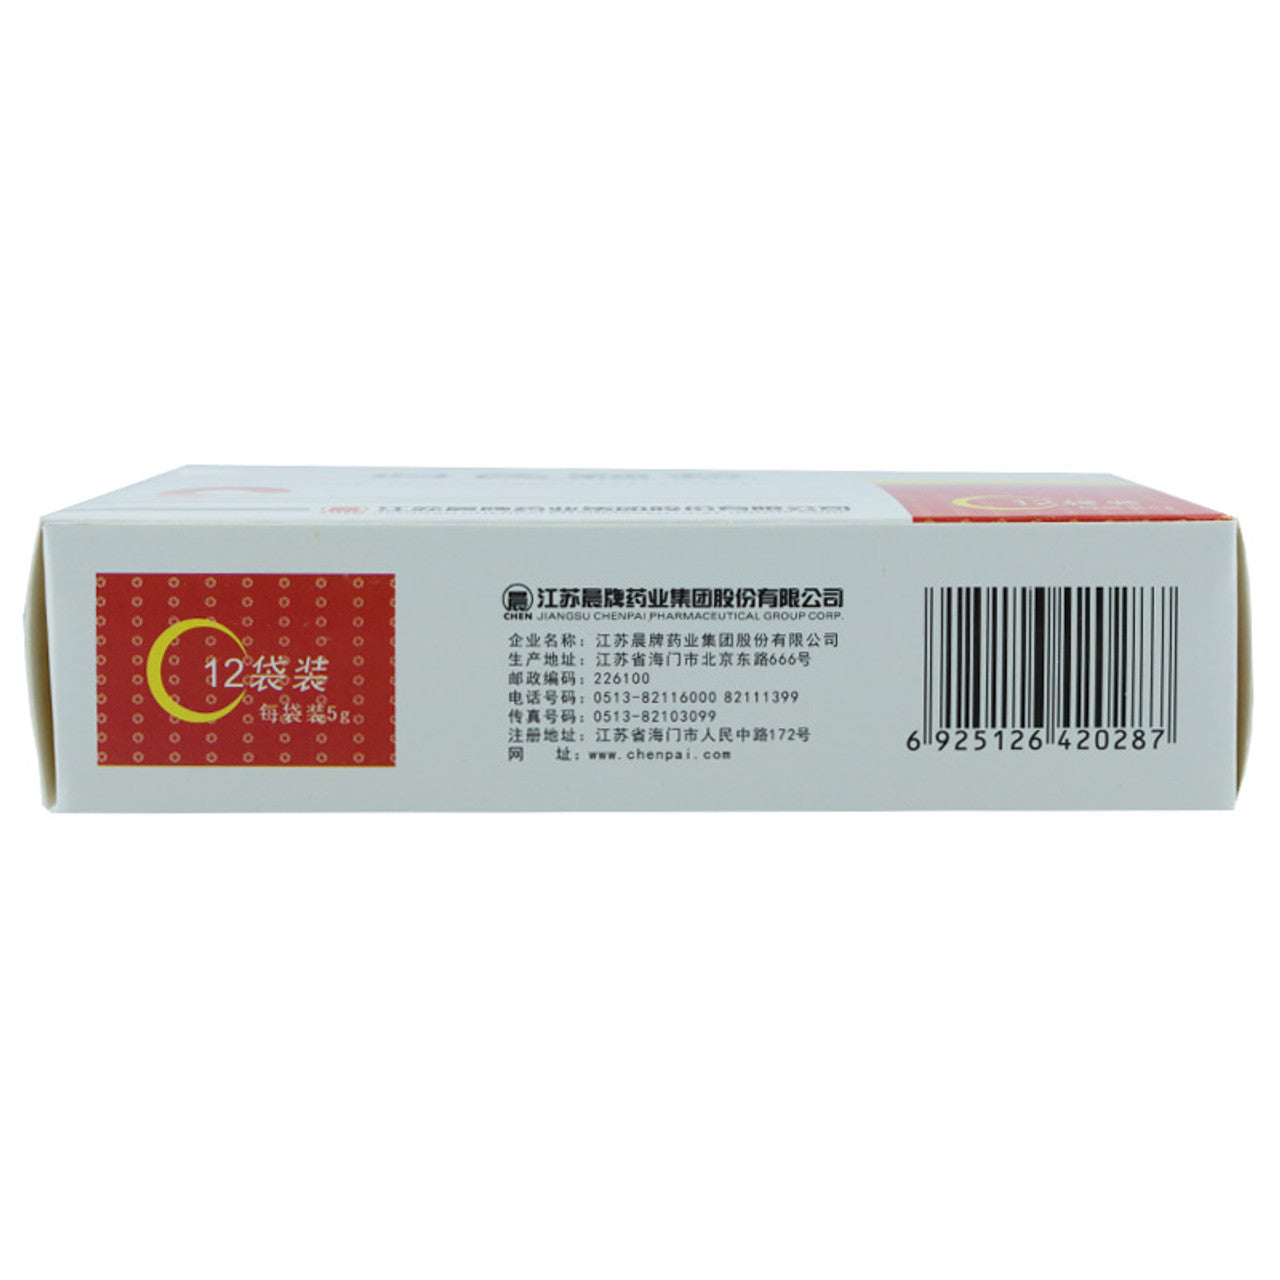 Chinese Herbs. Brand NINENG. Guiqi Keli or Guiqi Granules or GUIQIKELI or Gui Qi Ke Li or Gui Qi Granules for Tonify Blood